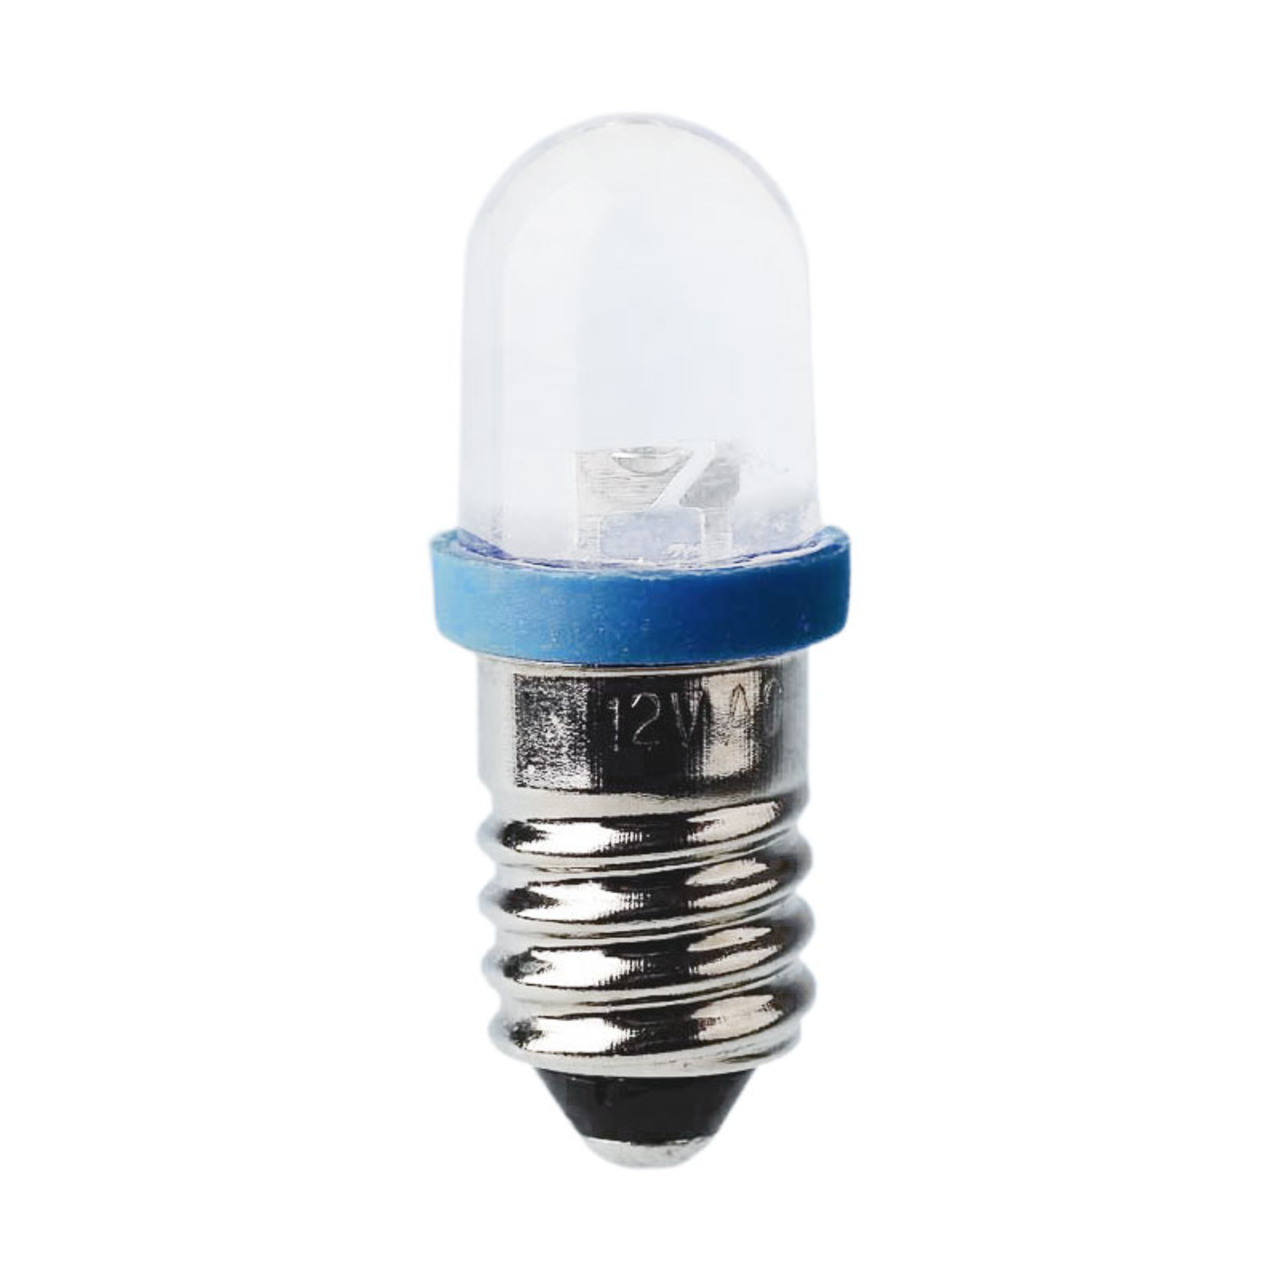 LED Kleinlampe Sockel E10- 10 x 28 mm- 12 V- grn